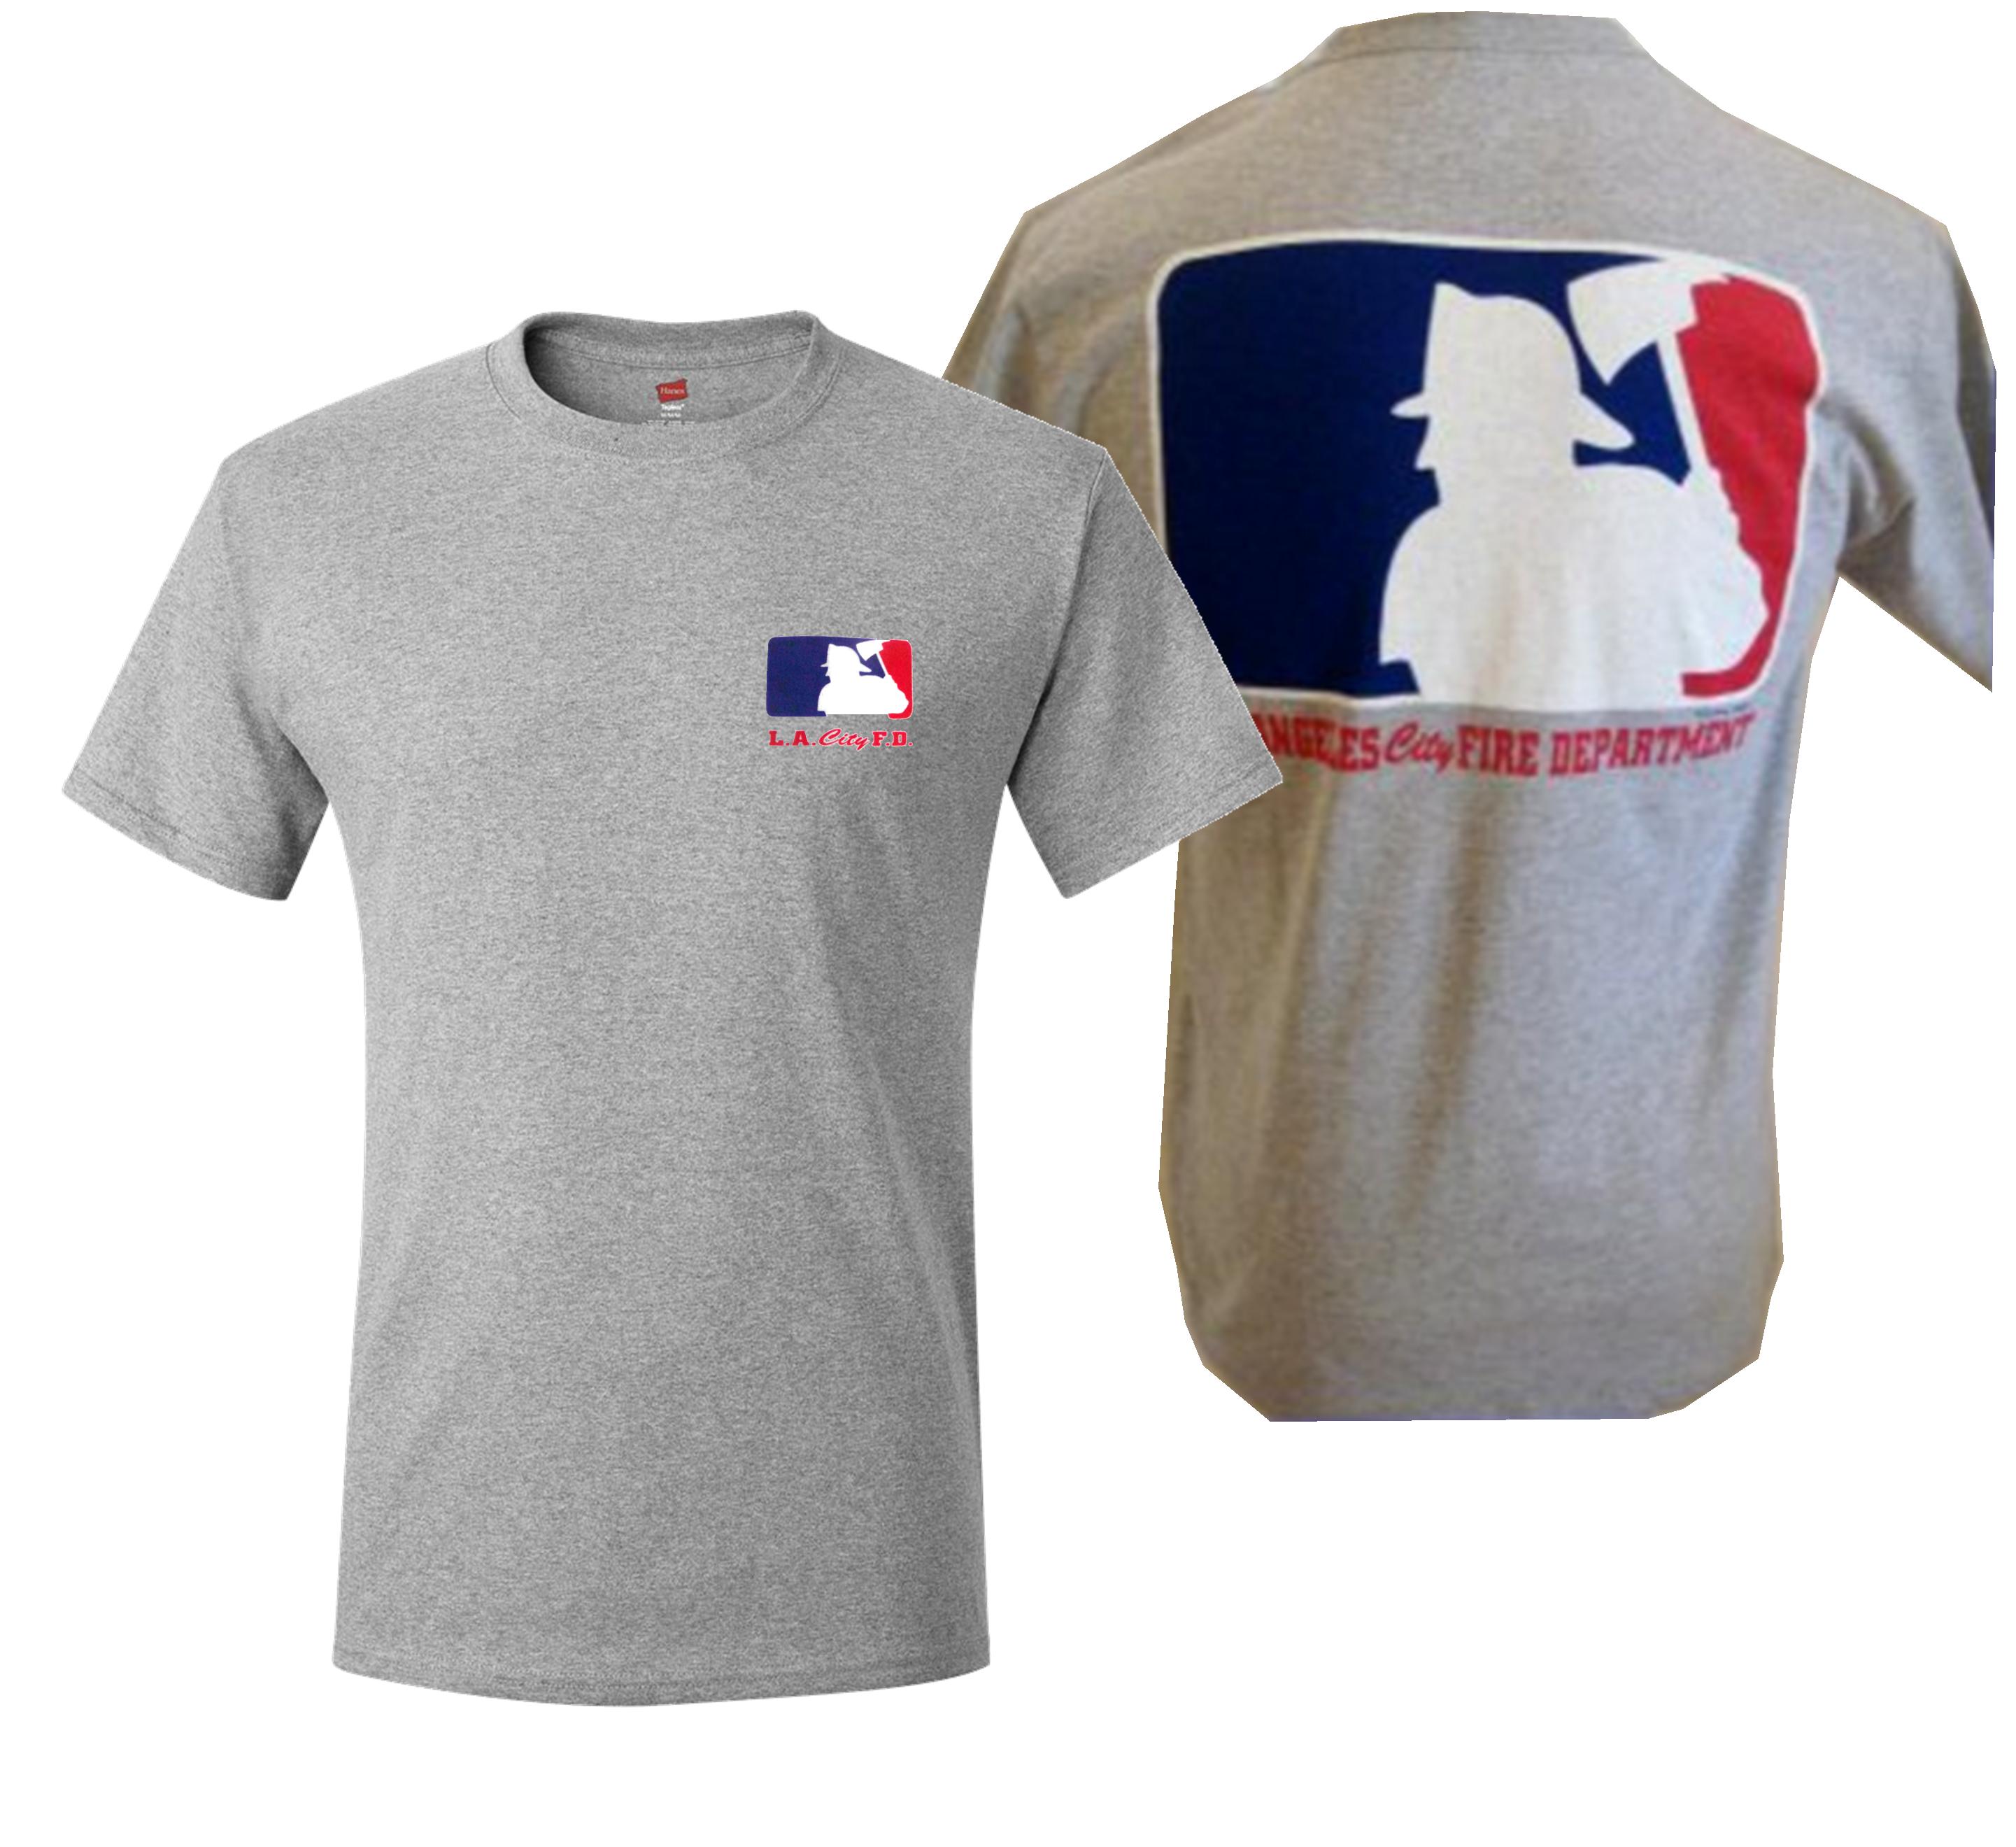 LAFD Major League Baseball Short Sleeve T-shirt - Fire Attire